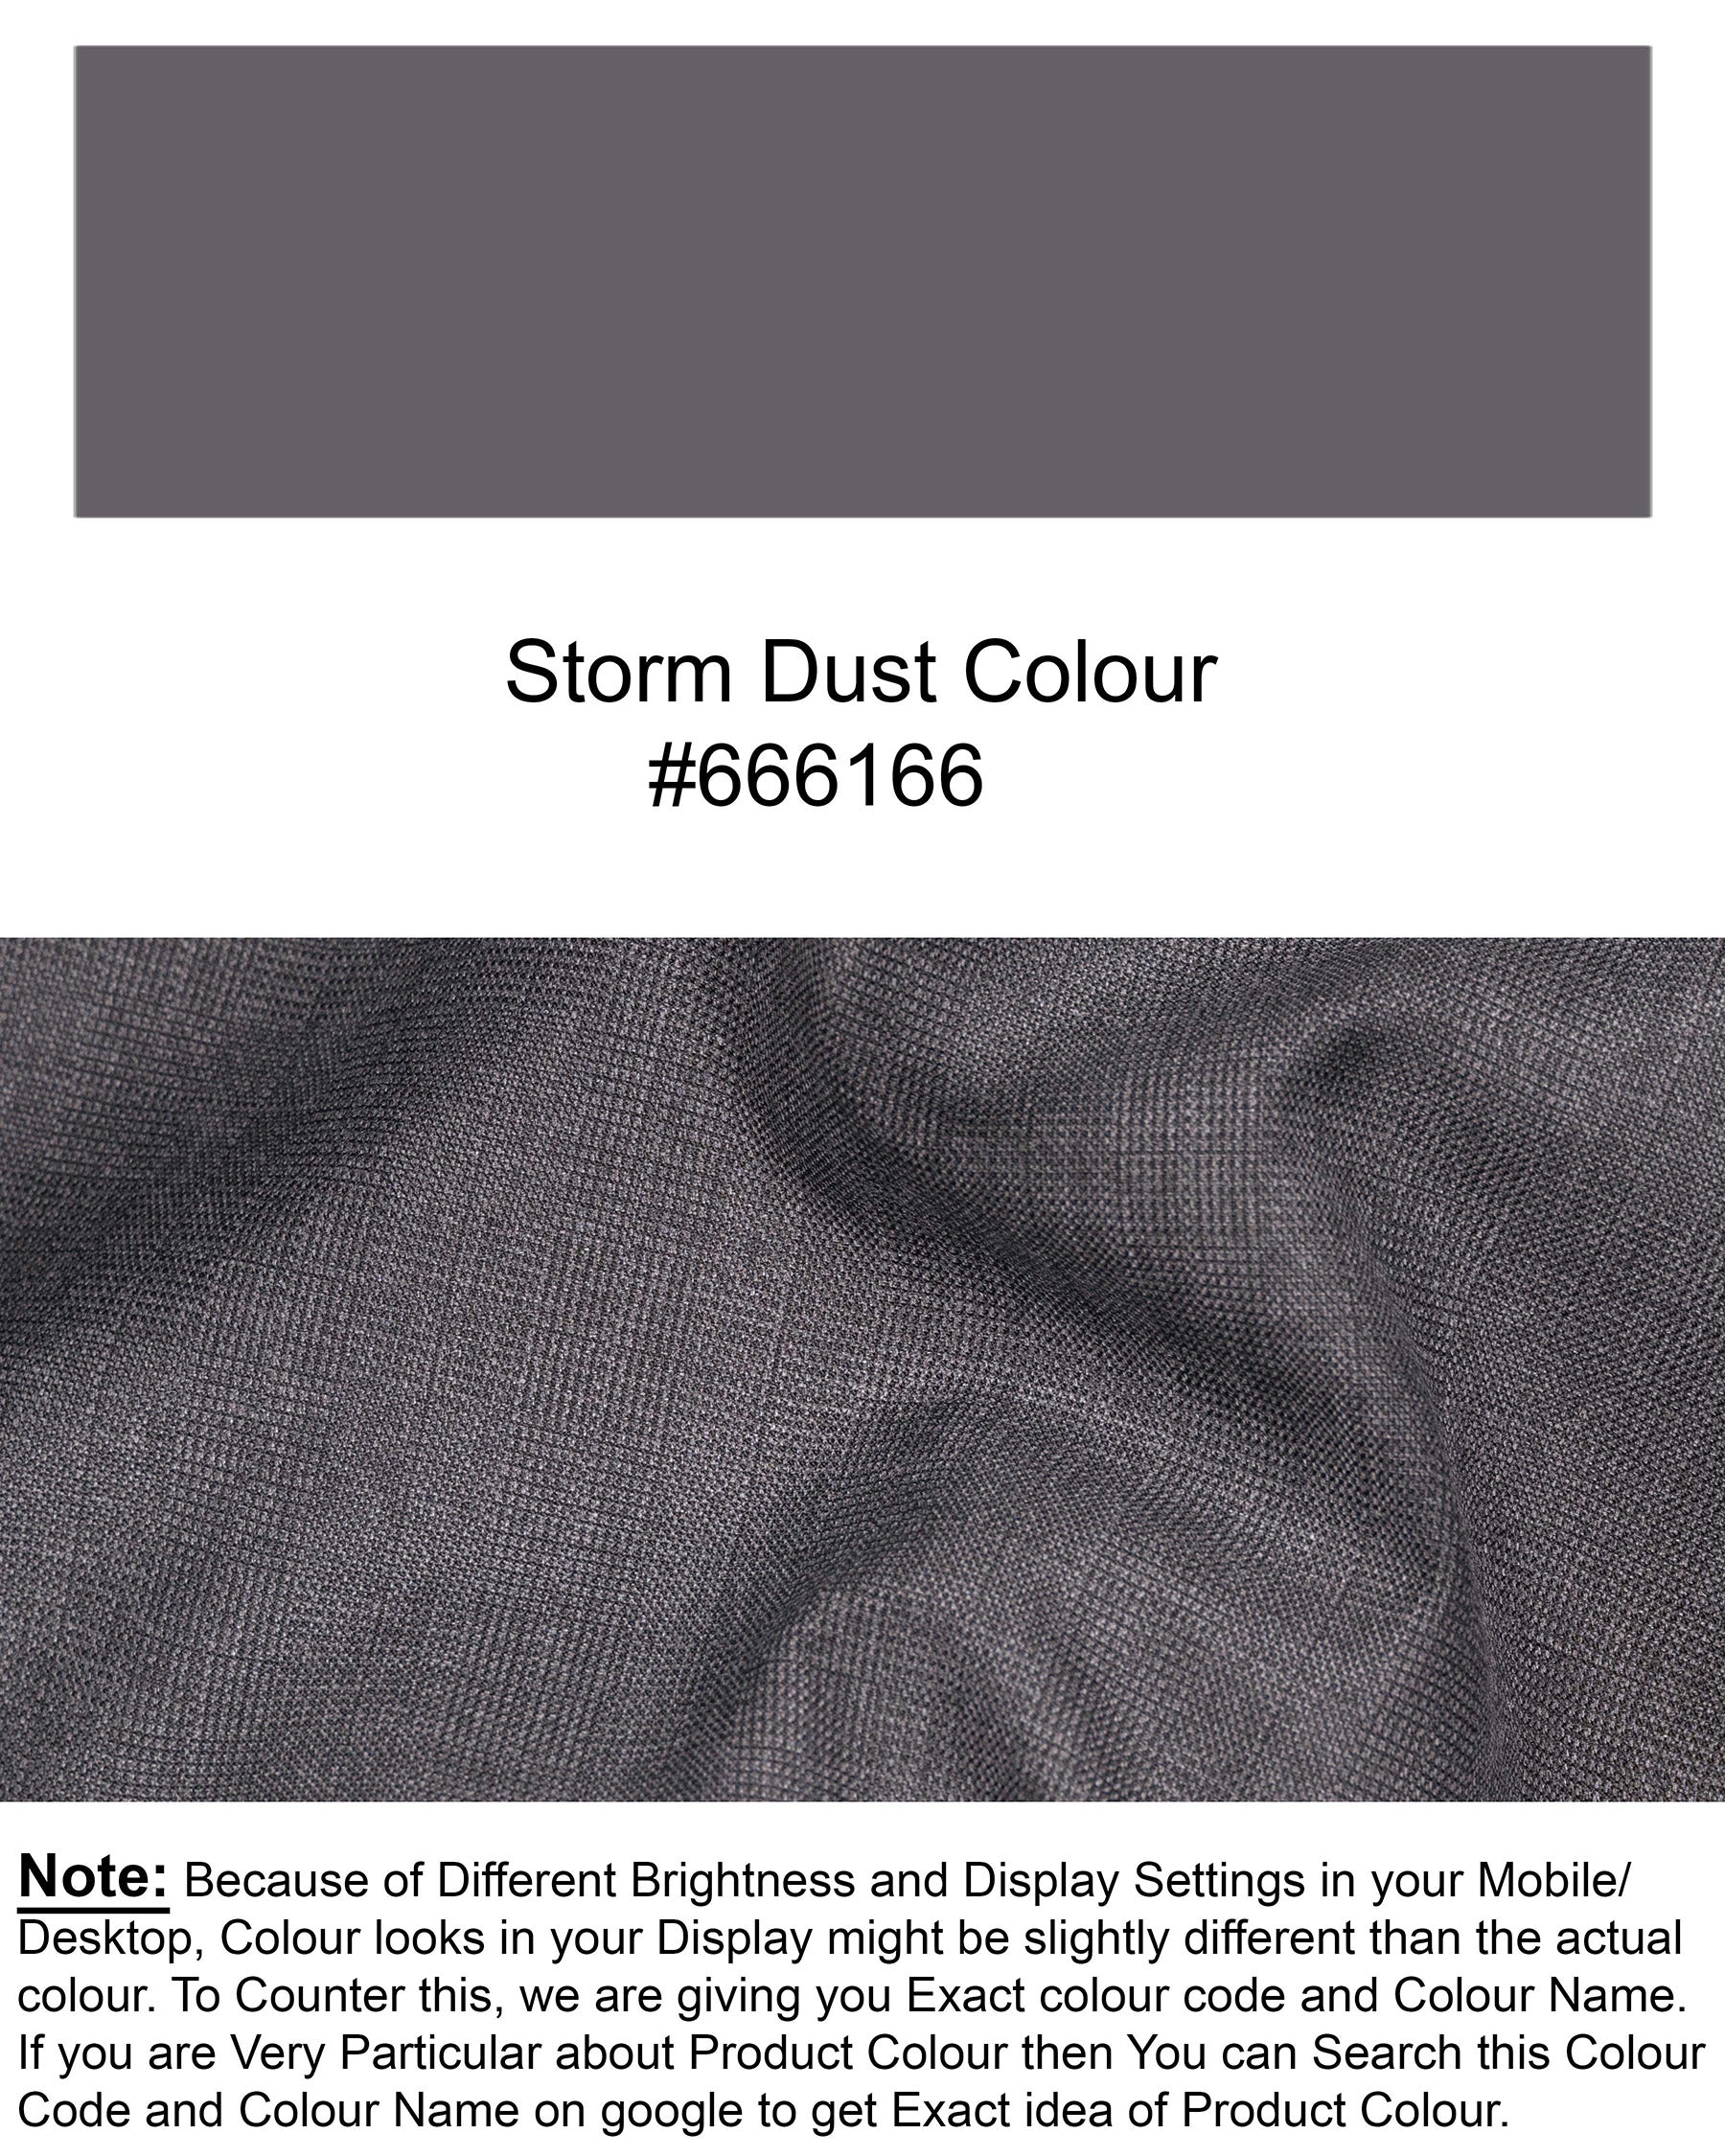 Storm Dust Single Breasted Blazer BL1834-SB-36, BL1834-SB-38, BL1834-SB-40, BL1834-SB-42, BL1834-SB-44, BL1834-SB-46, BL1834-SB-48, BL1834-SB-50, BL1834-SB-52, BL1834-SB-54, BL1834-SB-56, BL1834-SB-58, BL1834-SB-60